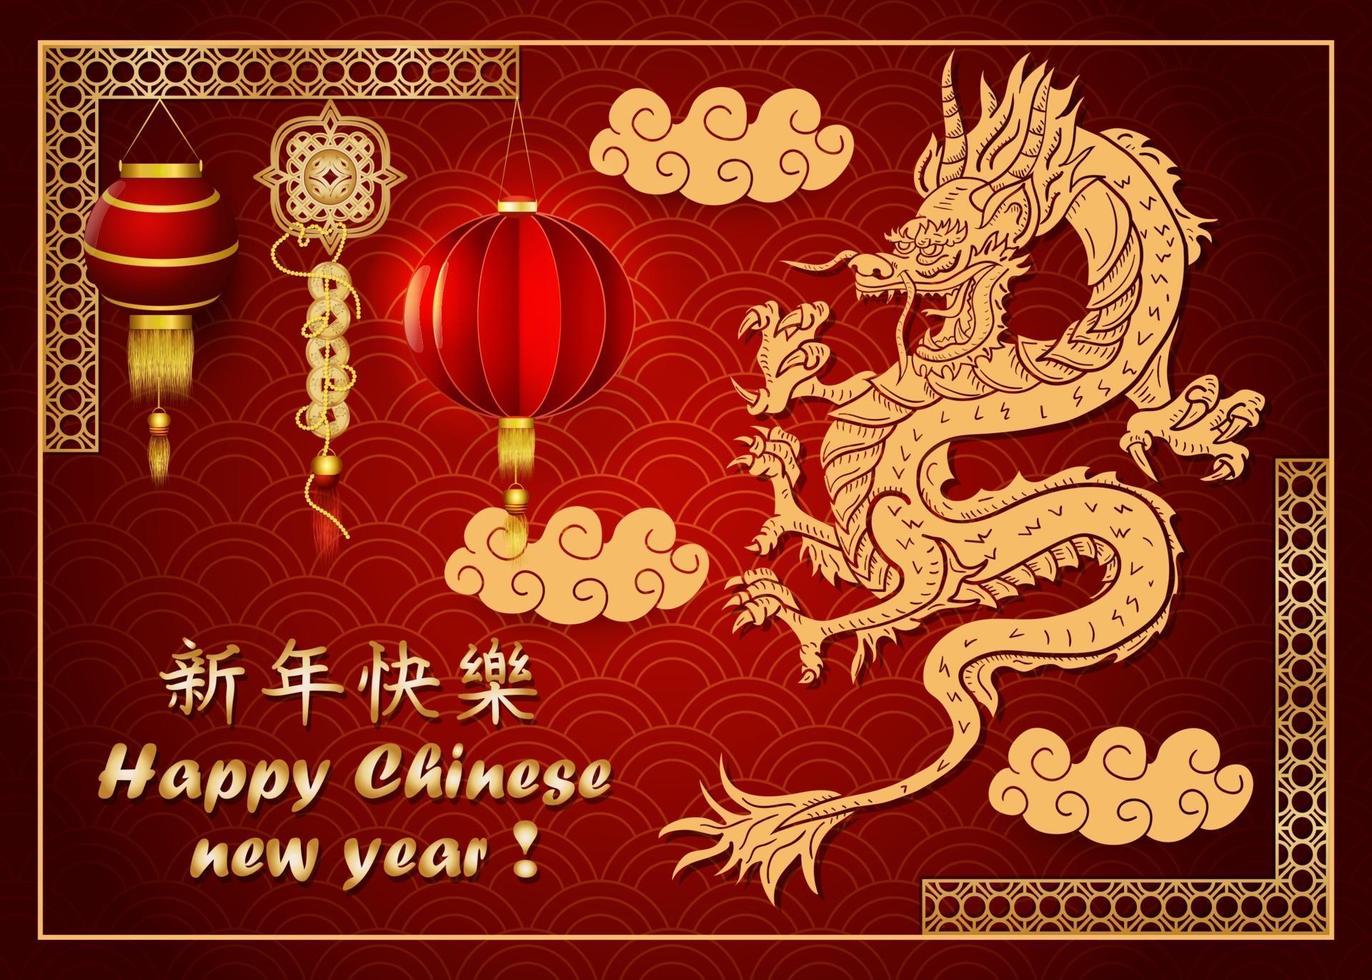 couleurs rouge et or nouvel an chinois design de dragon asiatique sculpté vecteur